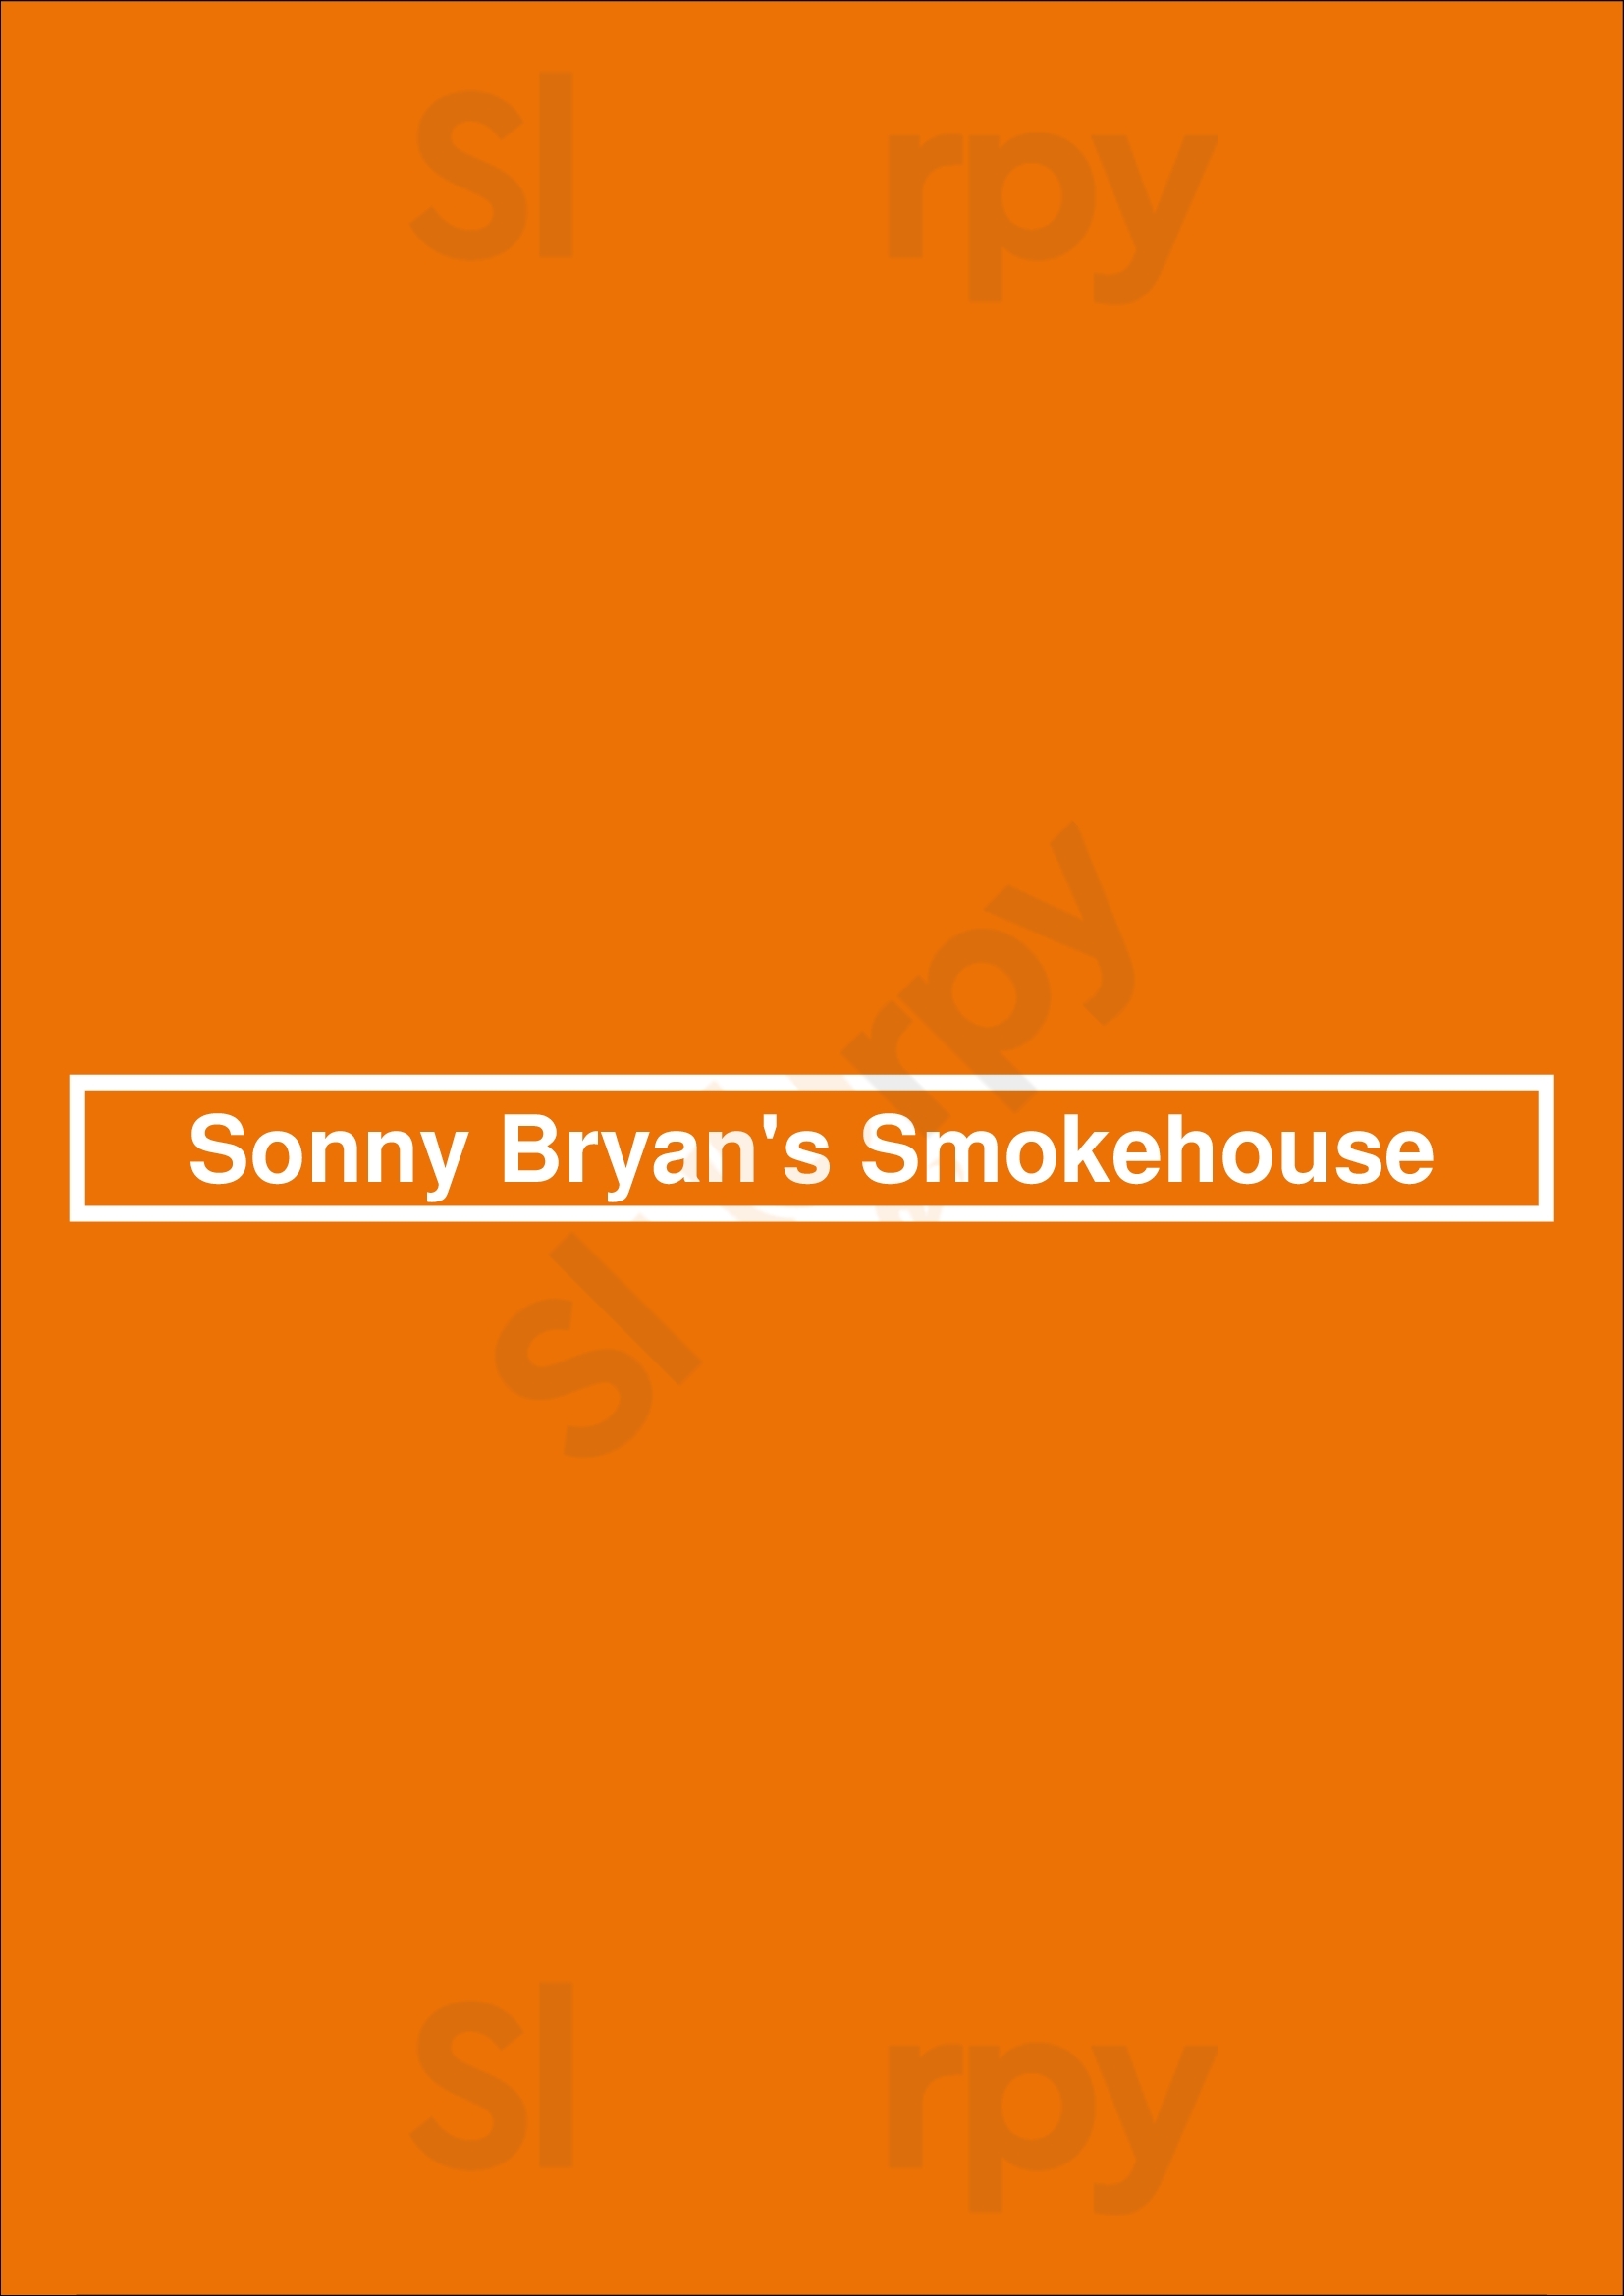 Sonny Bryan's Smokehouse Dallas Menu - 1